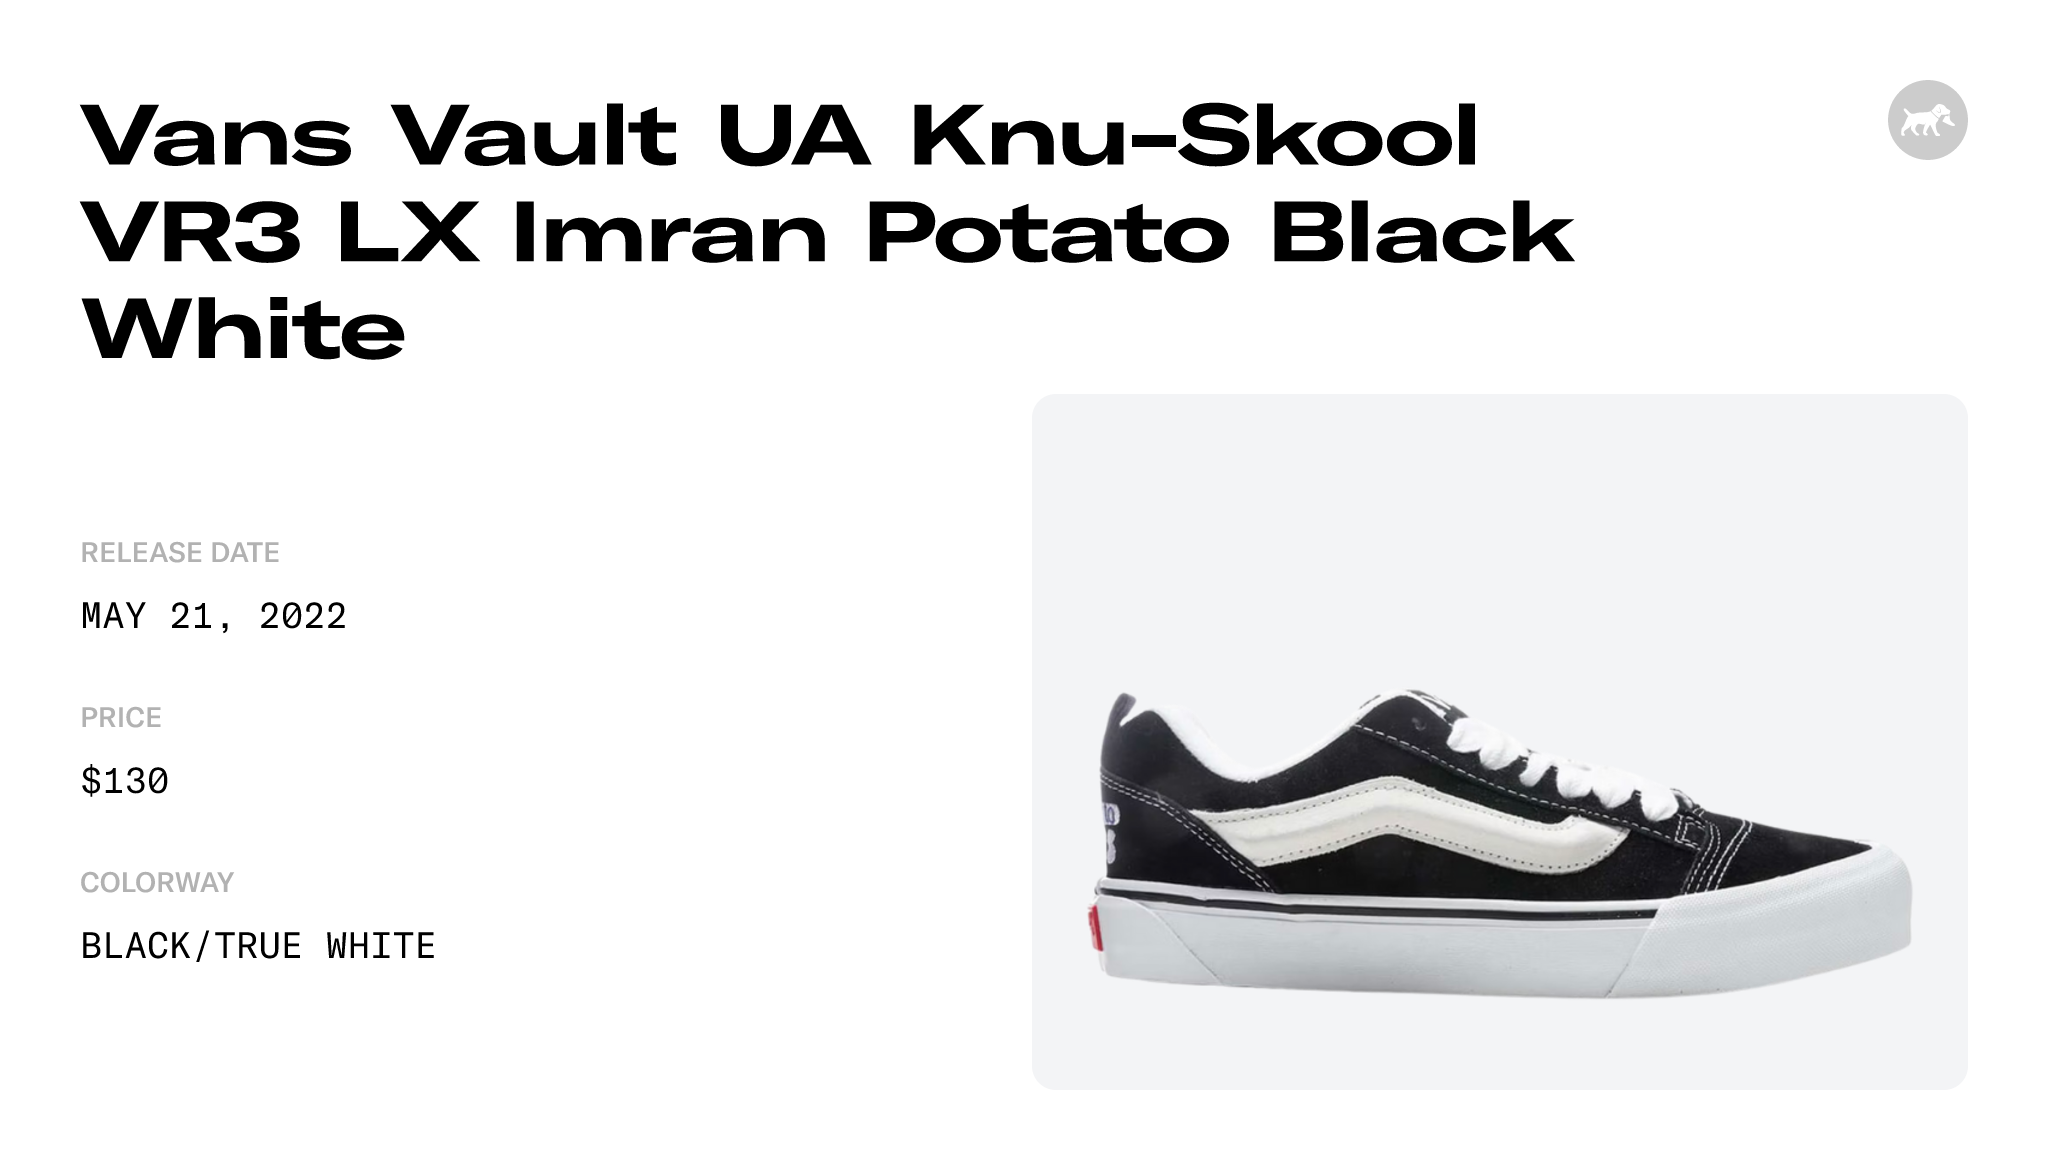 X IMRAN POTATO KNU-SKOOL VR3 LX Black/True White